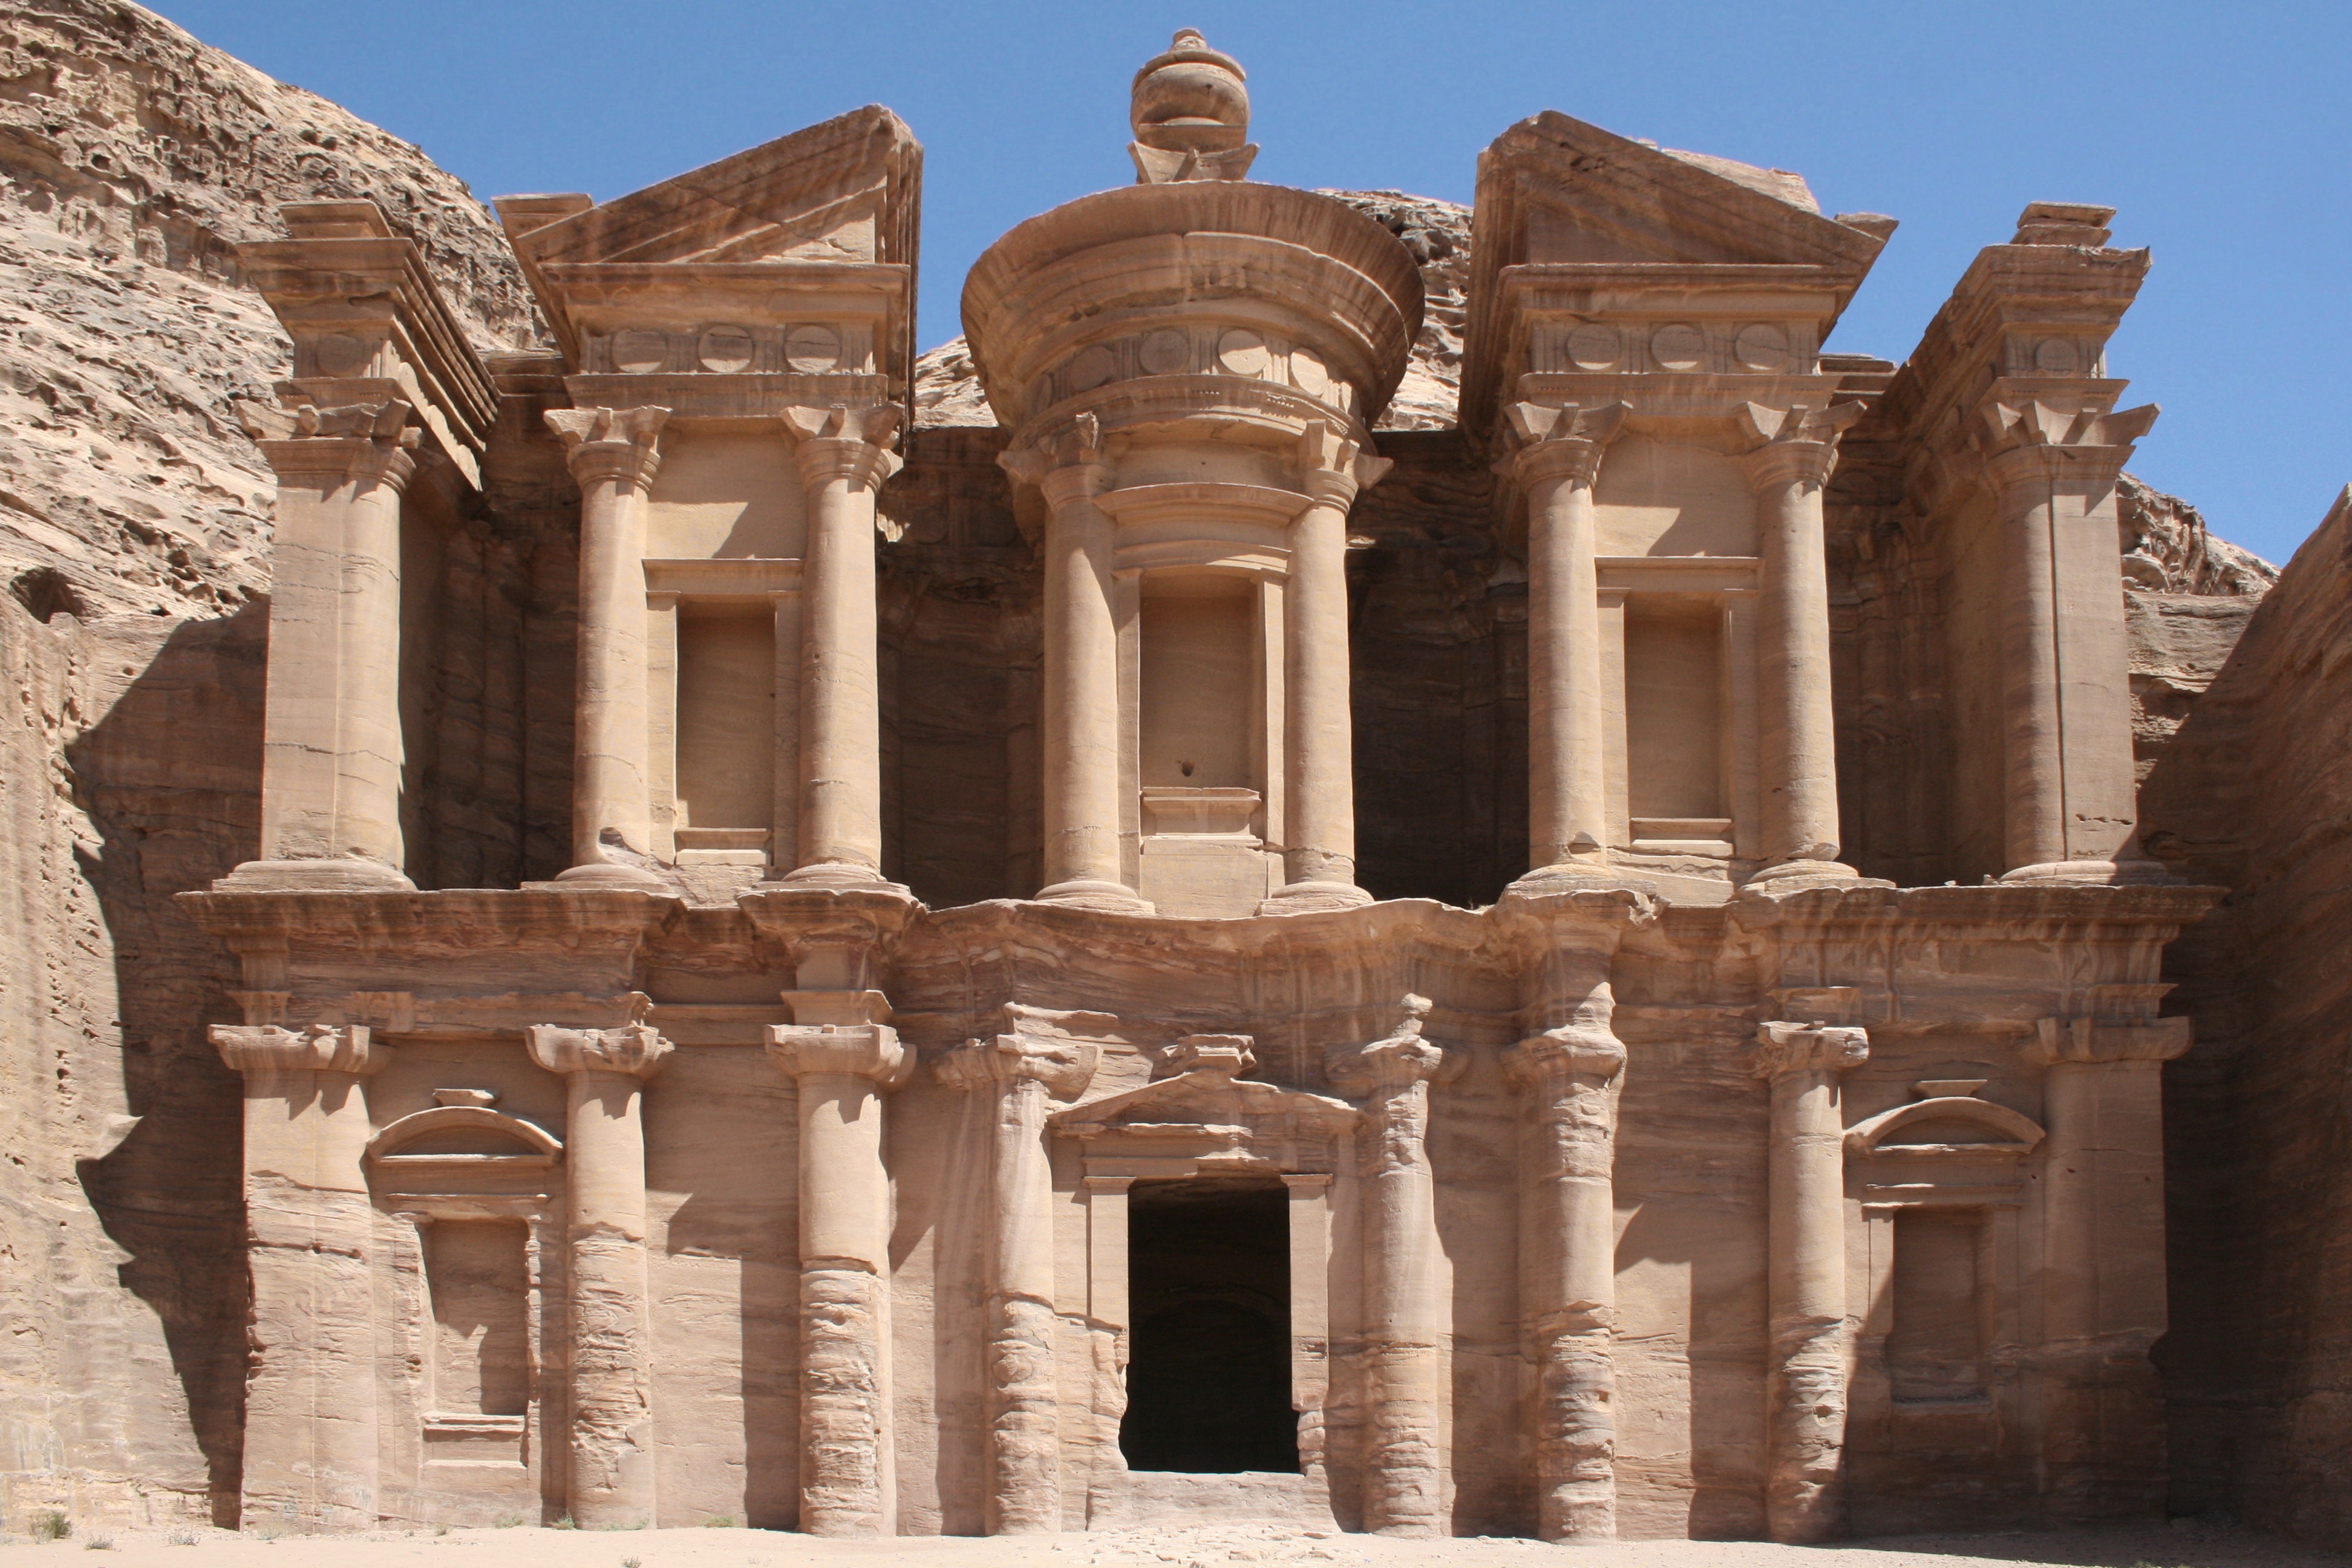 The Monastery, Petra, Jordan4